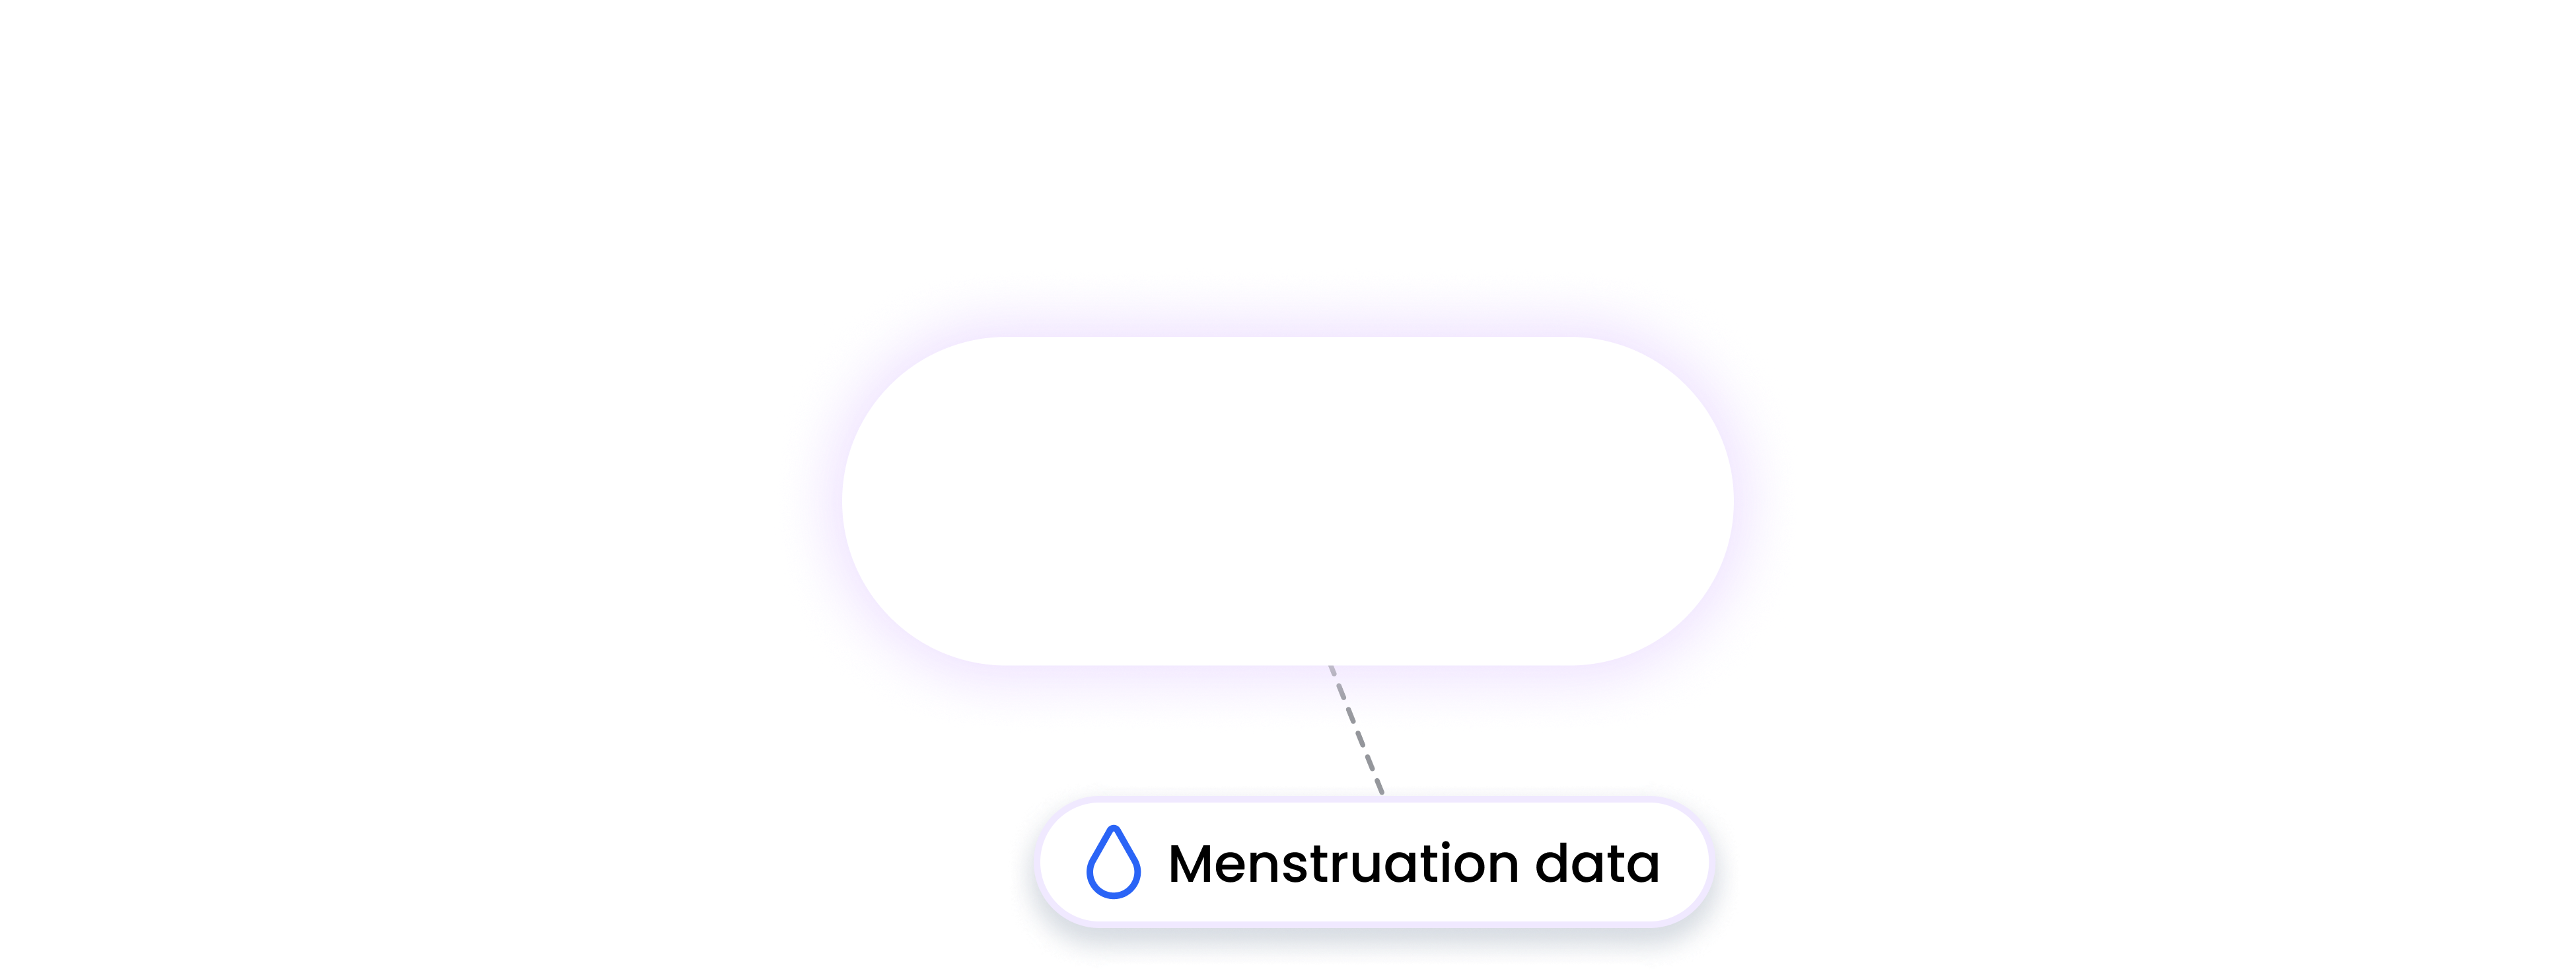 xoss integration MENSTRUATION data